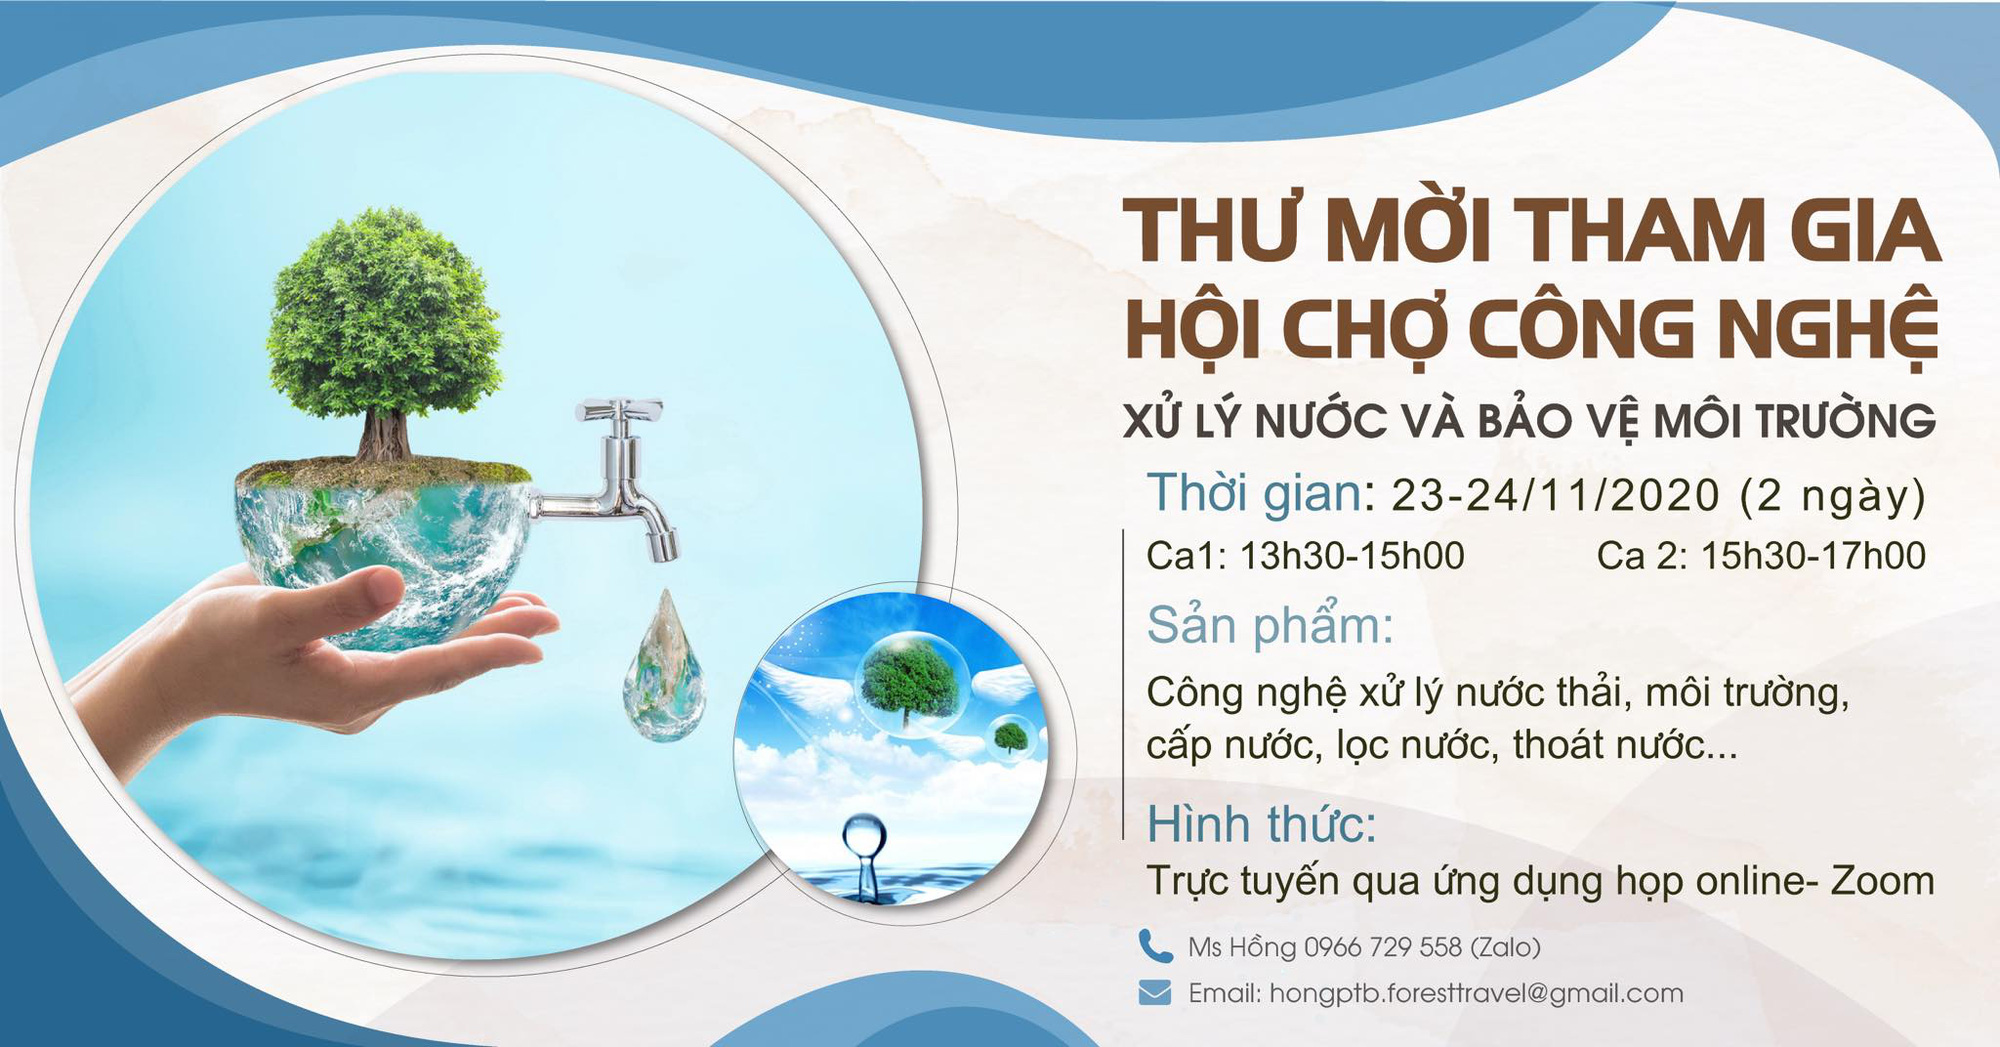 Sắp diễn ra Sự kiện hội chợ trực tuyến Việt Nam – Trung Quốc về công nghệ xử lý nước và bảo vệ môi trường - Ảnh 1.